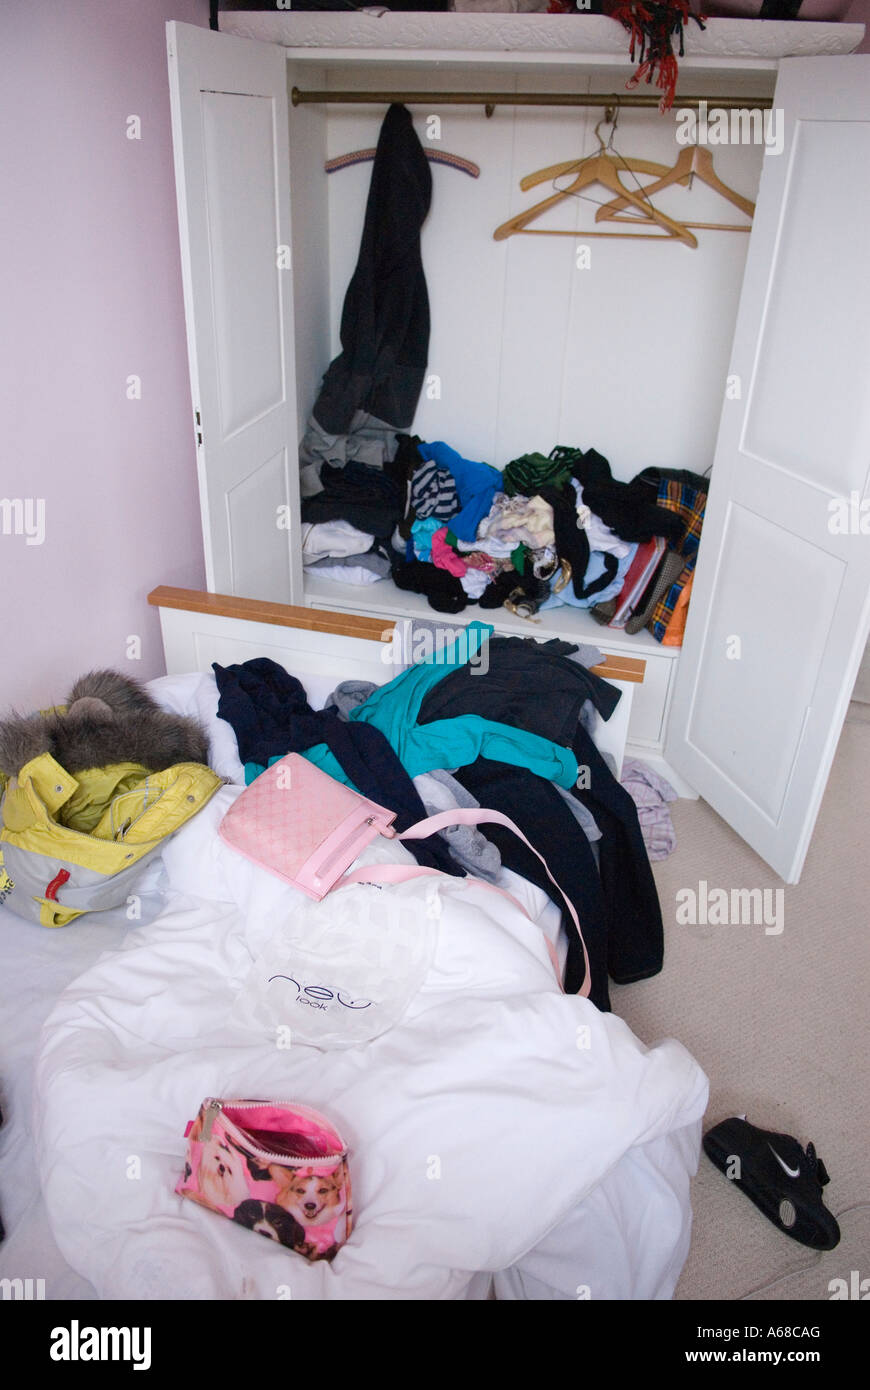 Los adolescentes desordenado dormitorio desordenado REINO UNIDO. Jovencita, quince años en la habitación y se deshacen la cama y armario HOMER SYKES Foto de stock